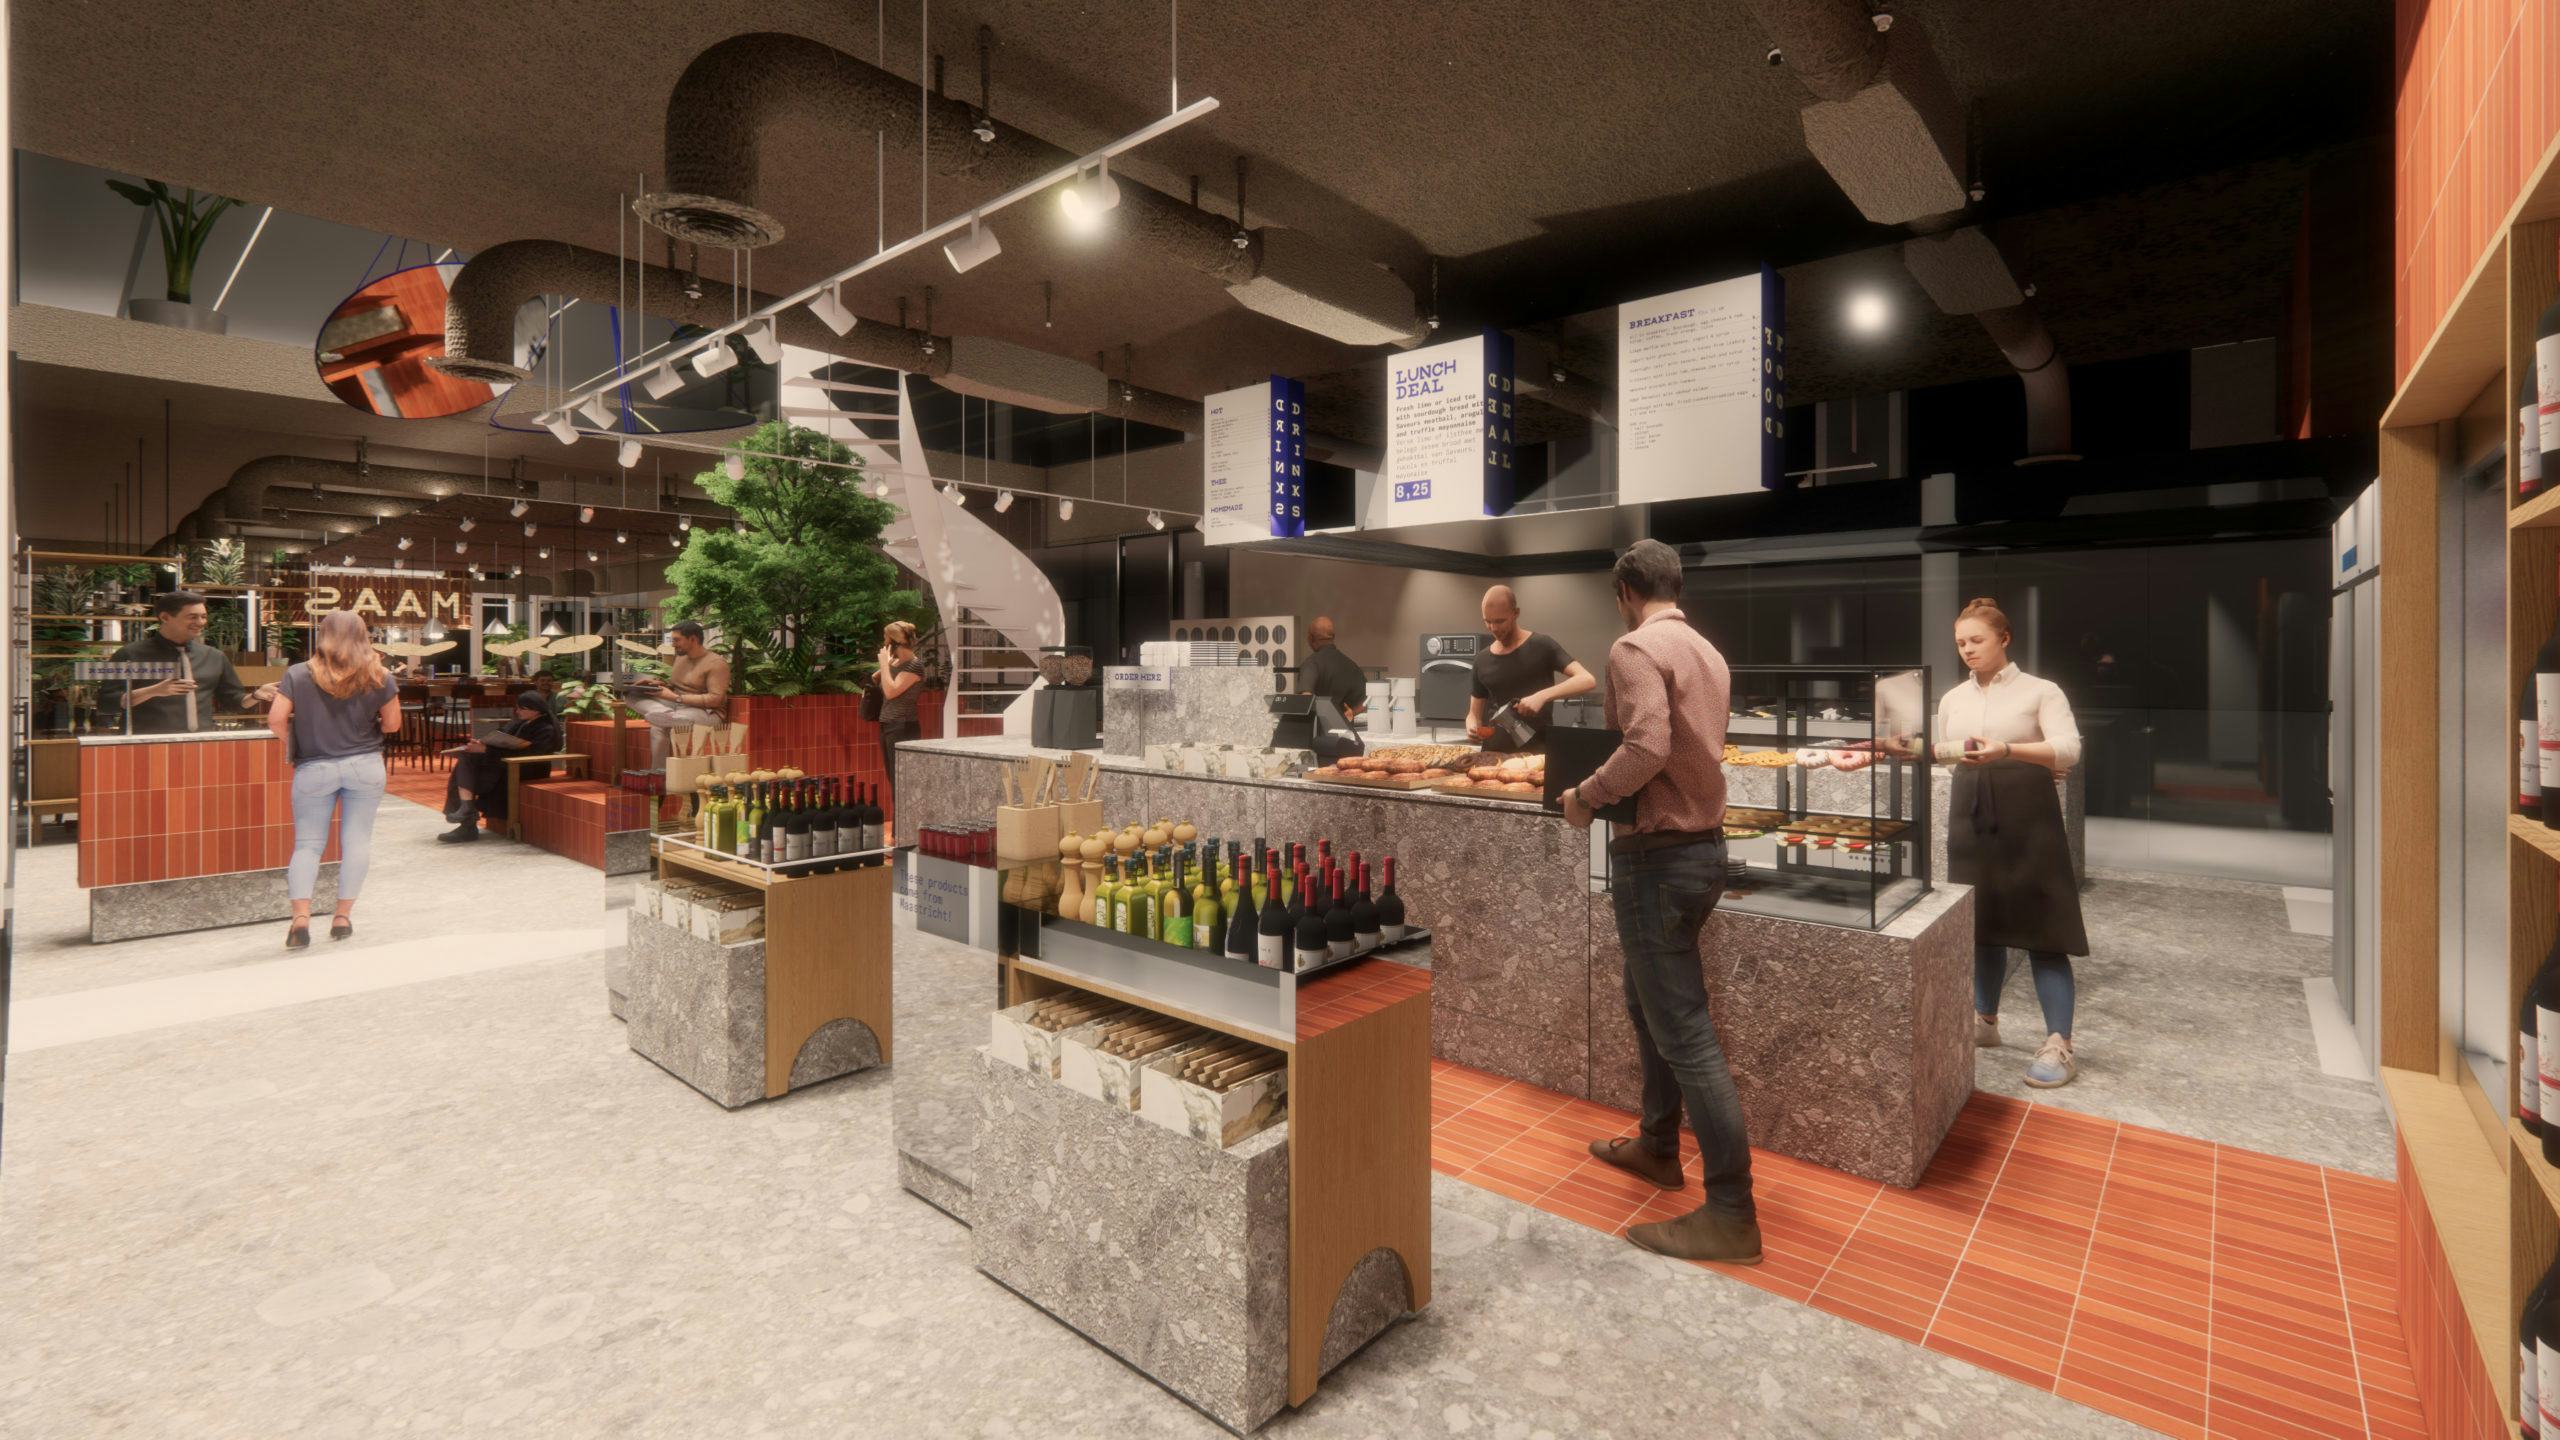 Vermaats nieuwe restaurant Bar Bistro Saam opent in september